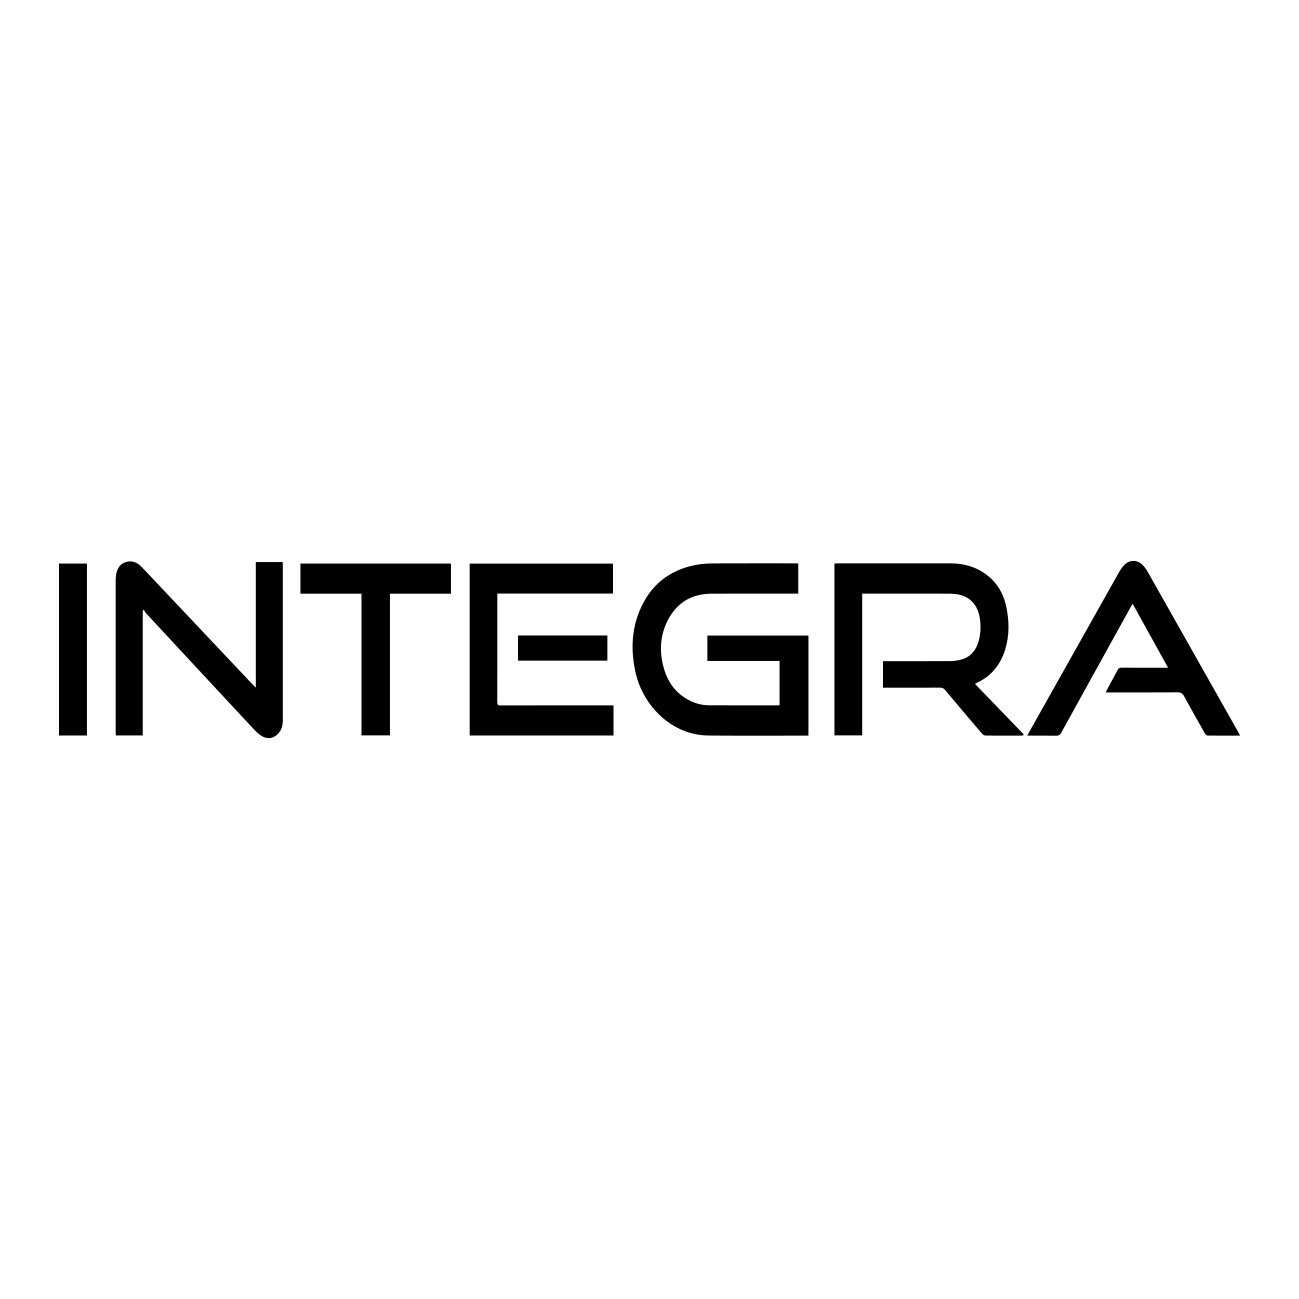 honda integra logo